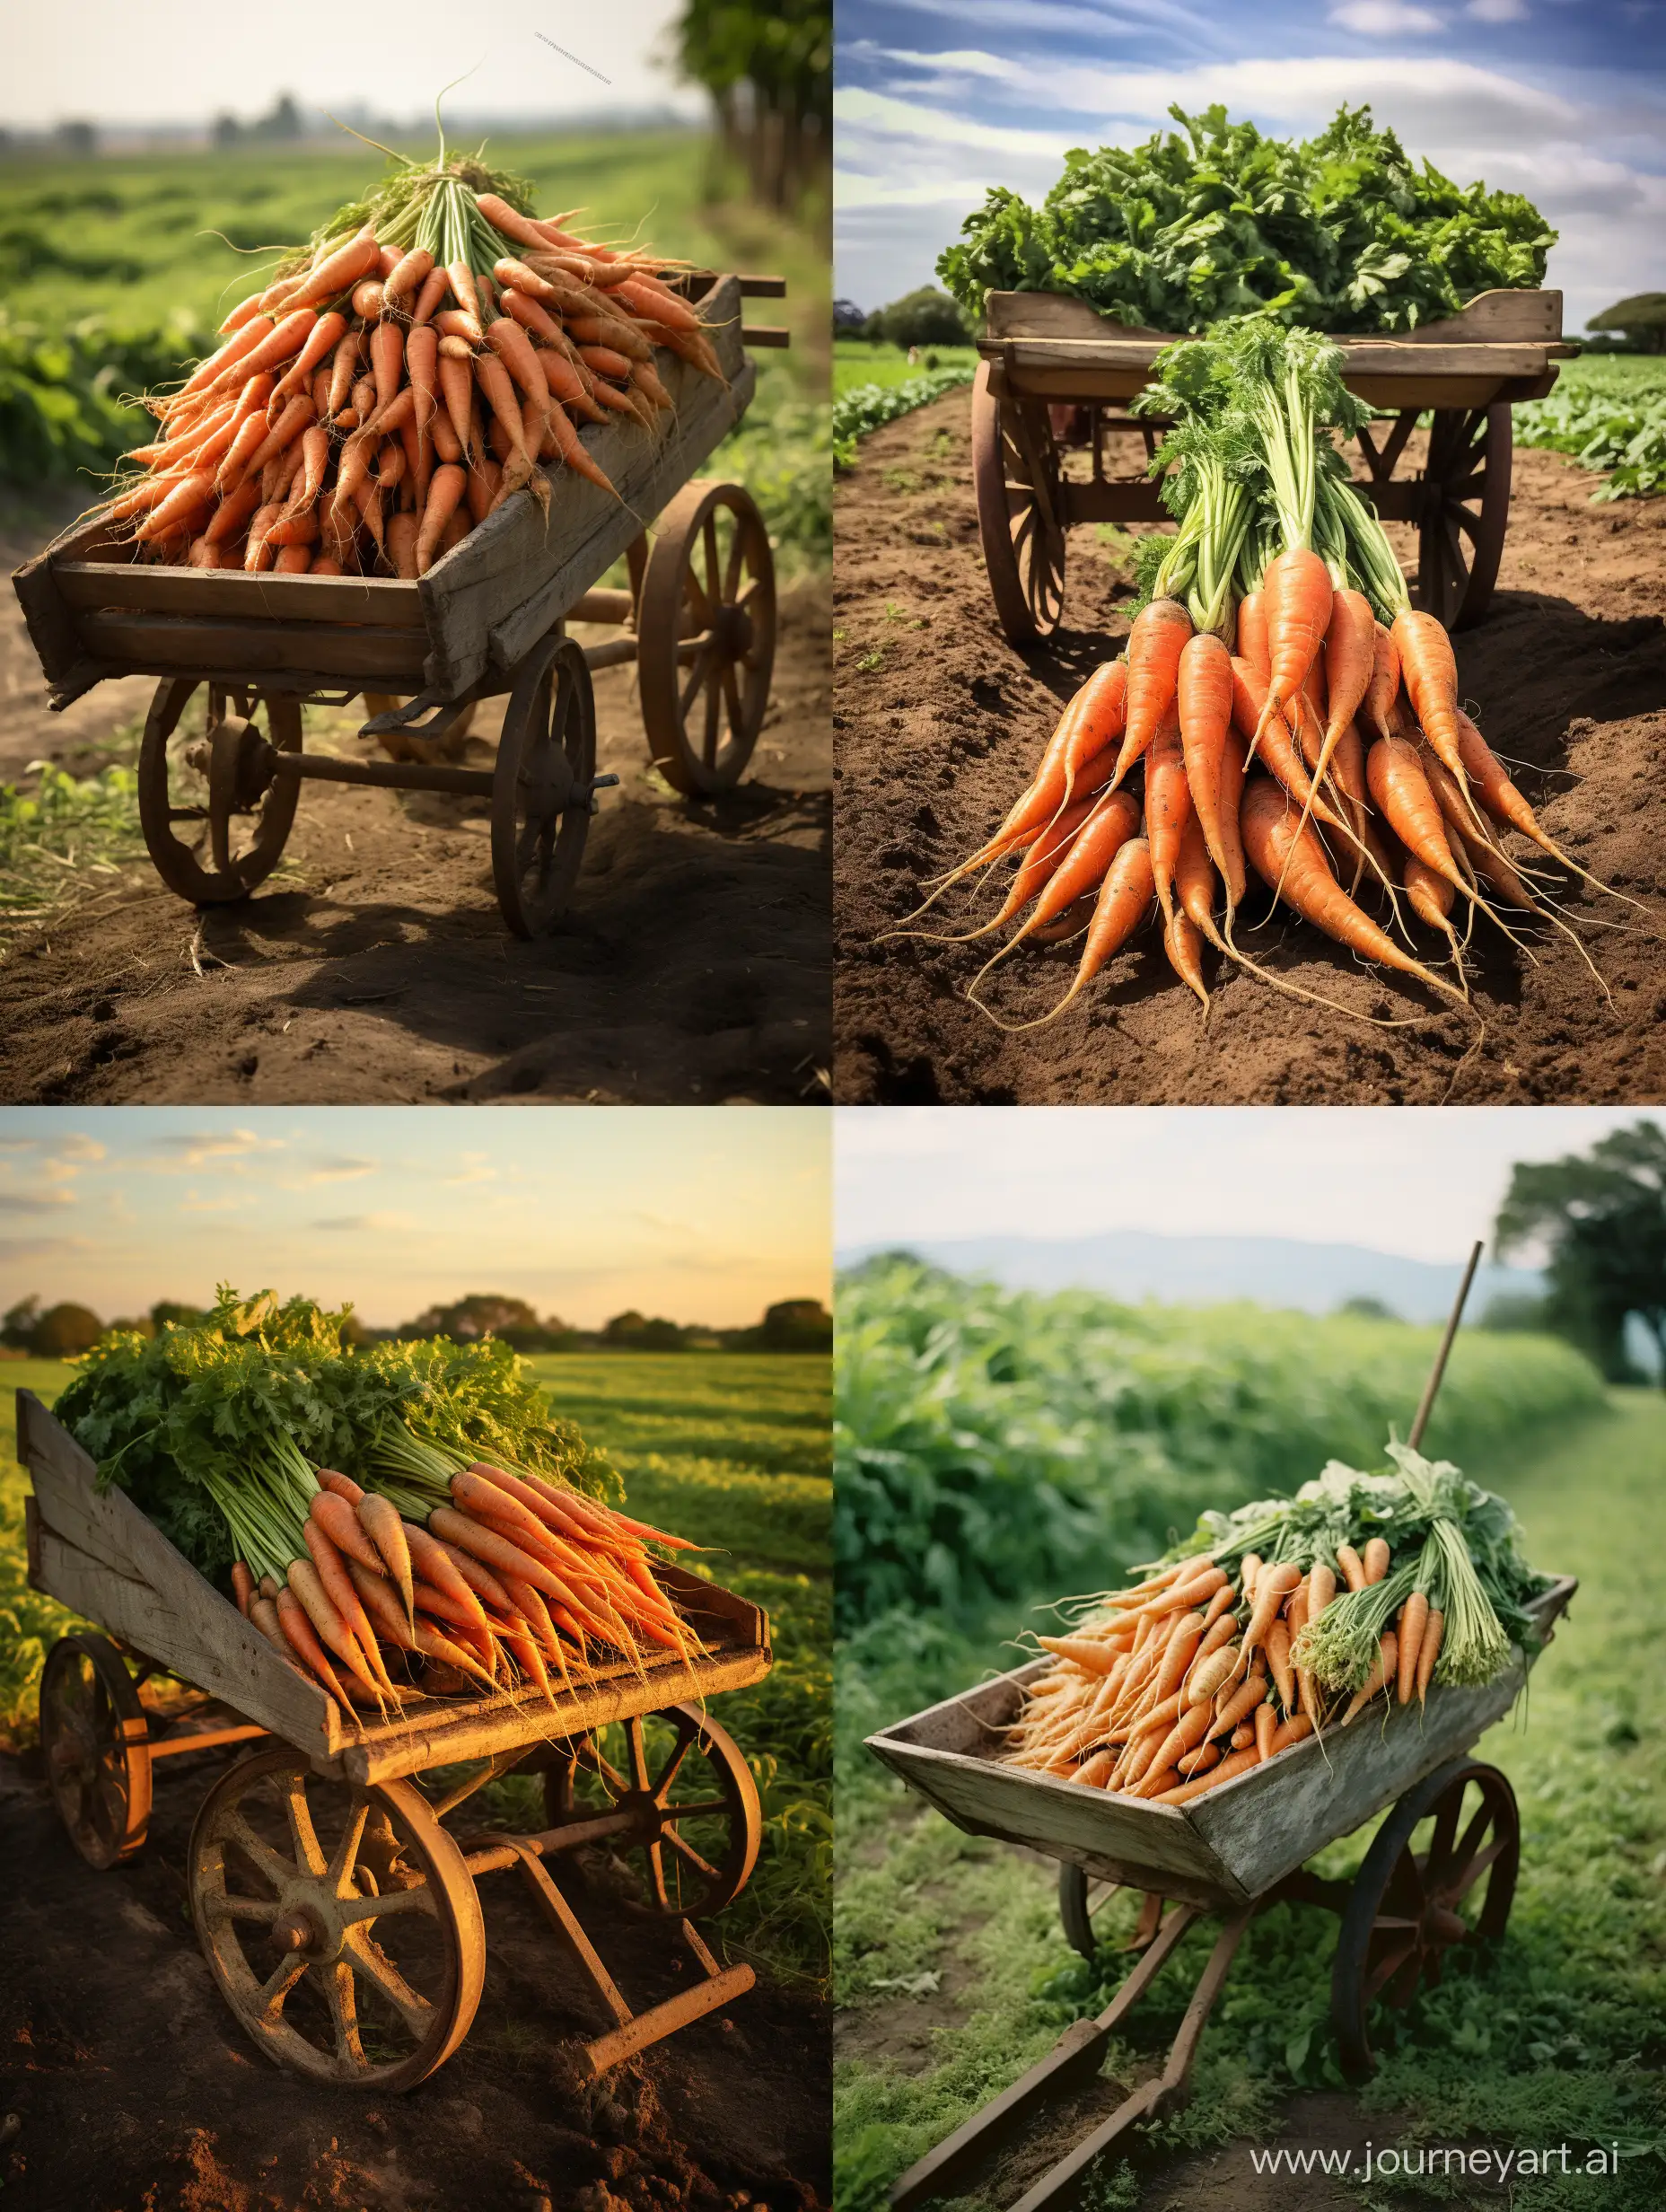 Harvesting-Carrots-on-a-Rural-Farm-Gathering-Fresh-Produce-with-a-Wheelbarrow